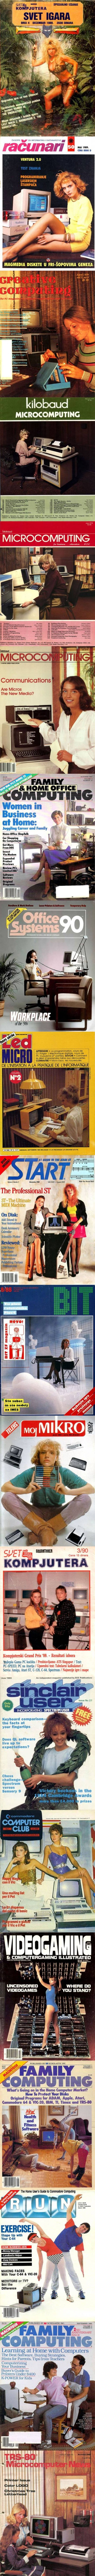 Stranci se čude naslovnicama starih jugoslavenskih časopisa, sjećate li se još ovih primjeraka?